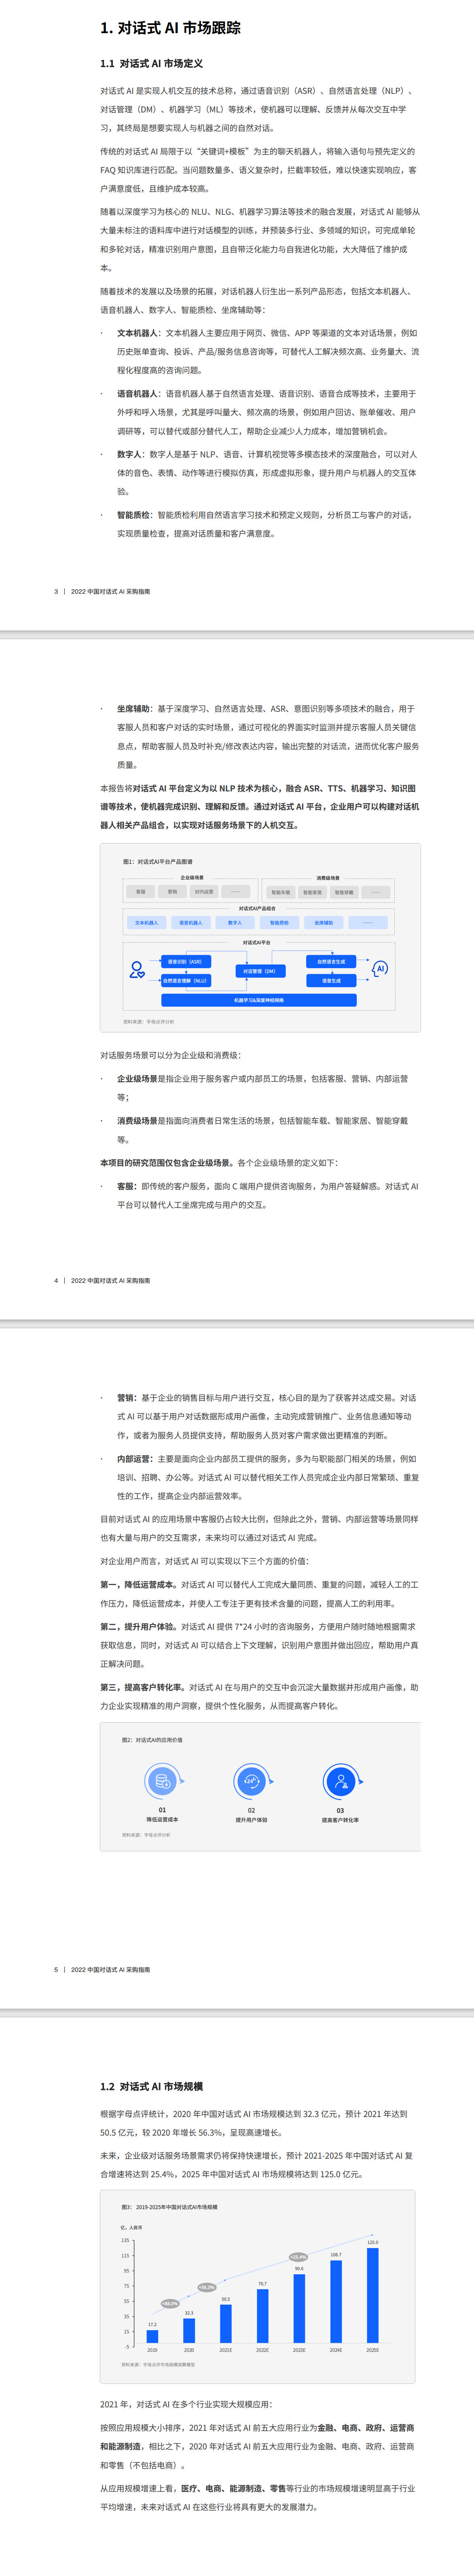 2022中国对话式AI采购指南1.png